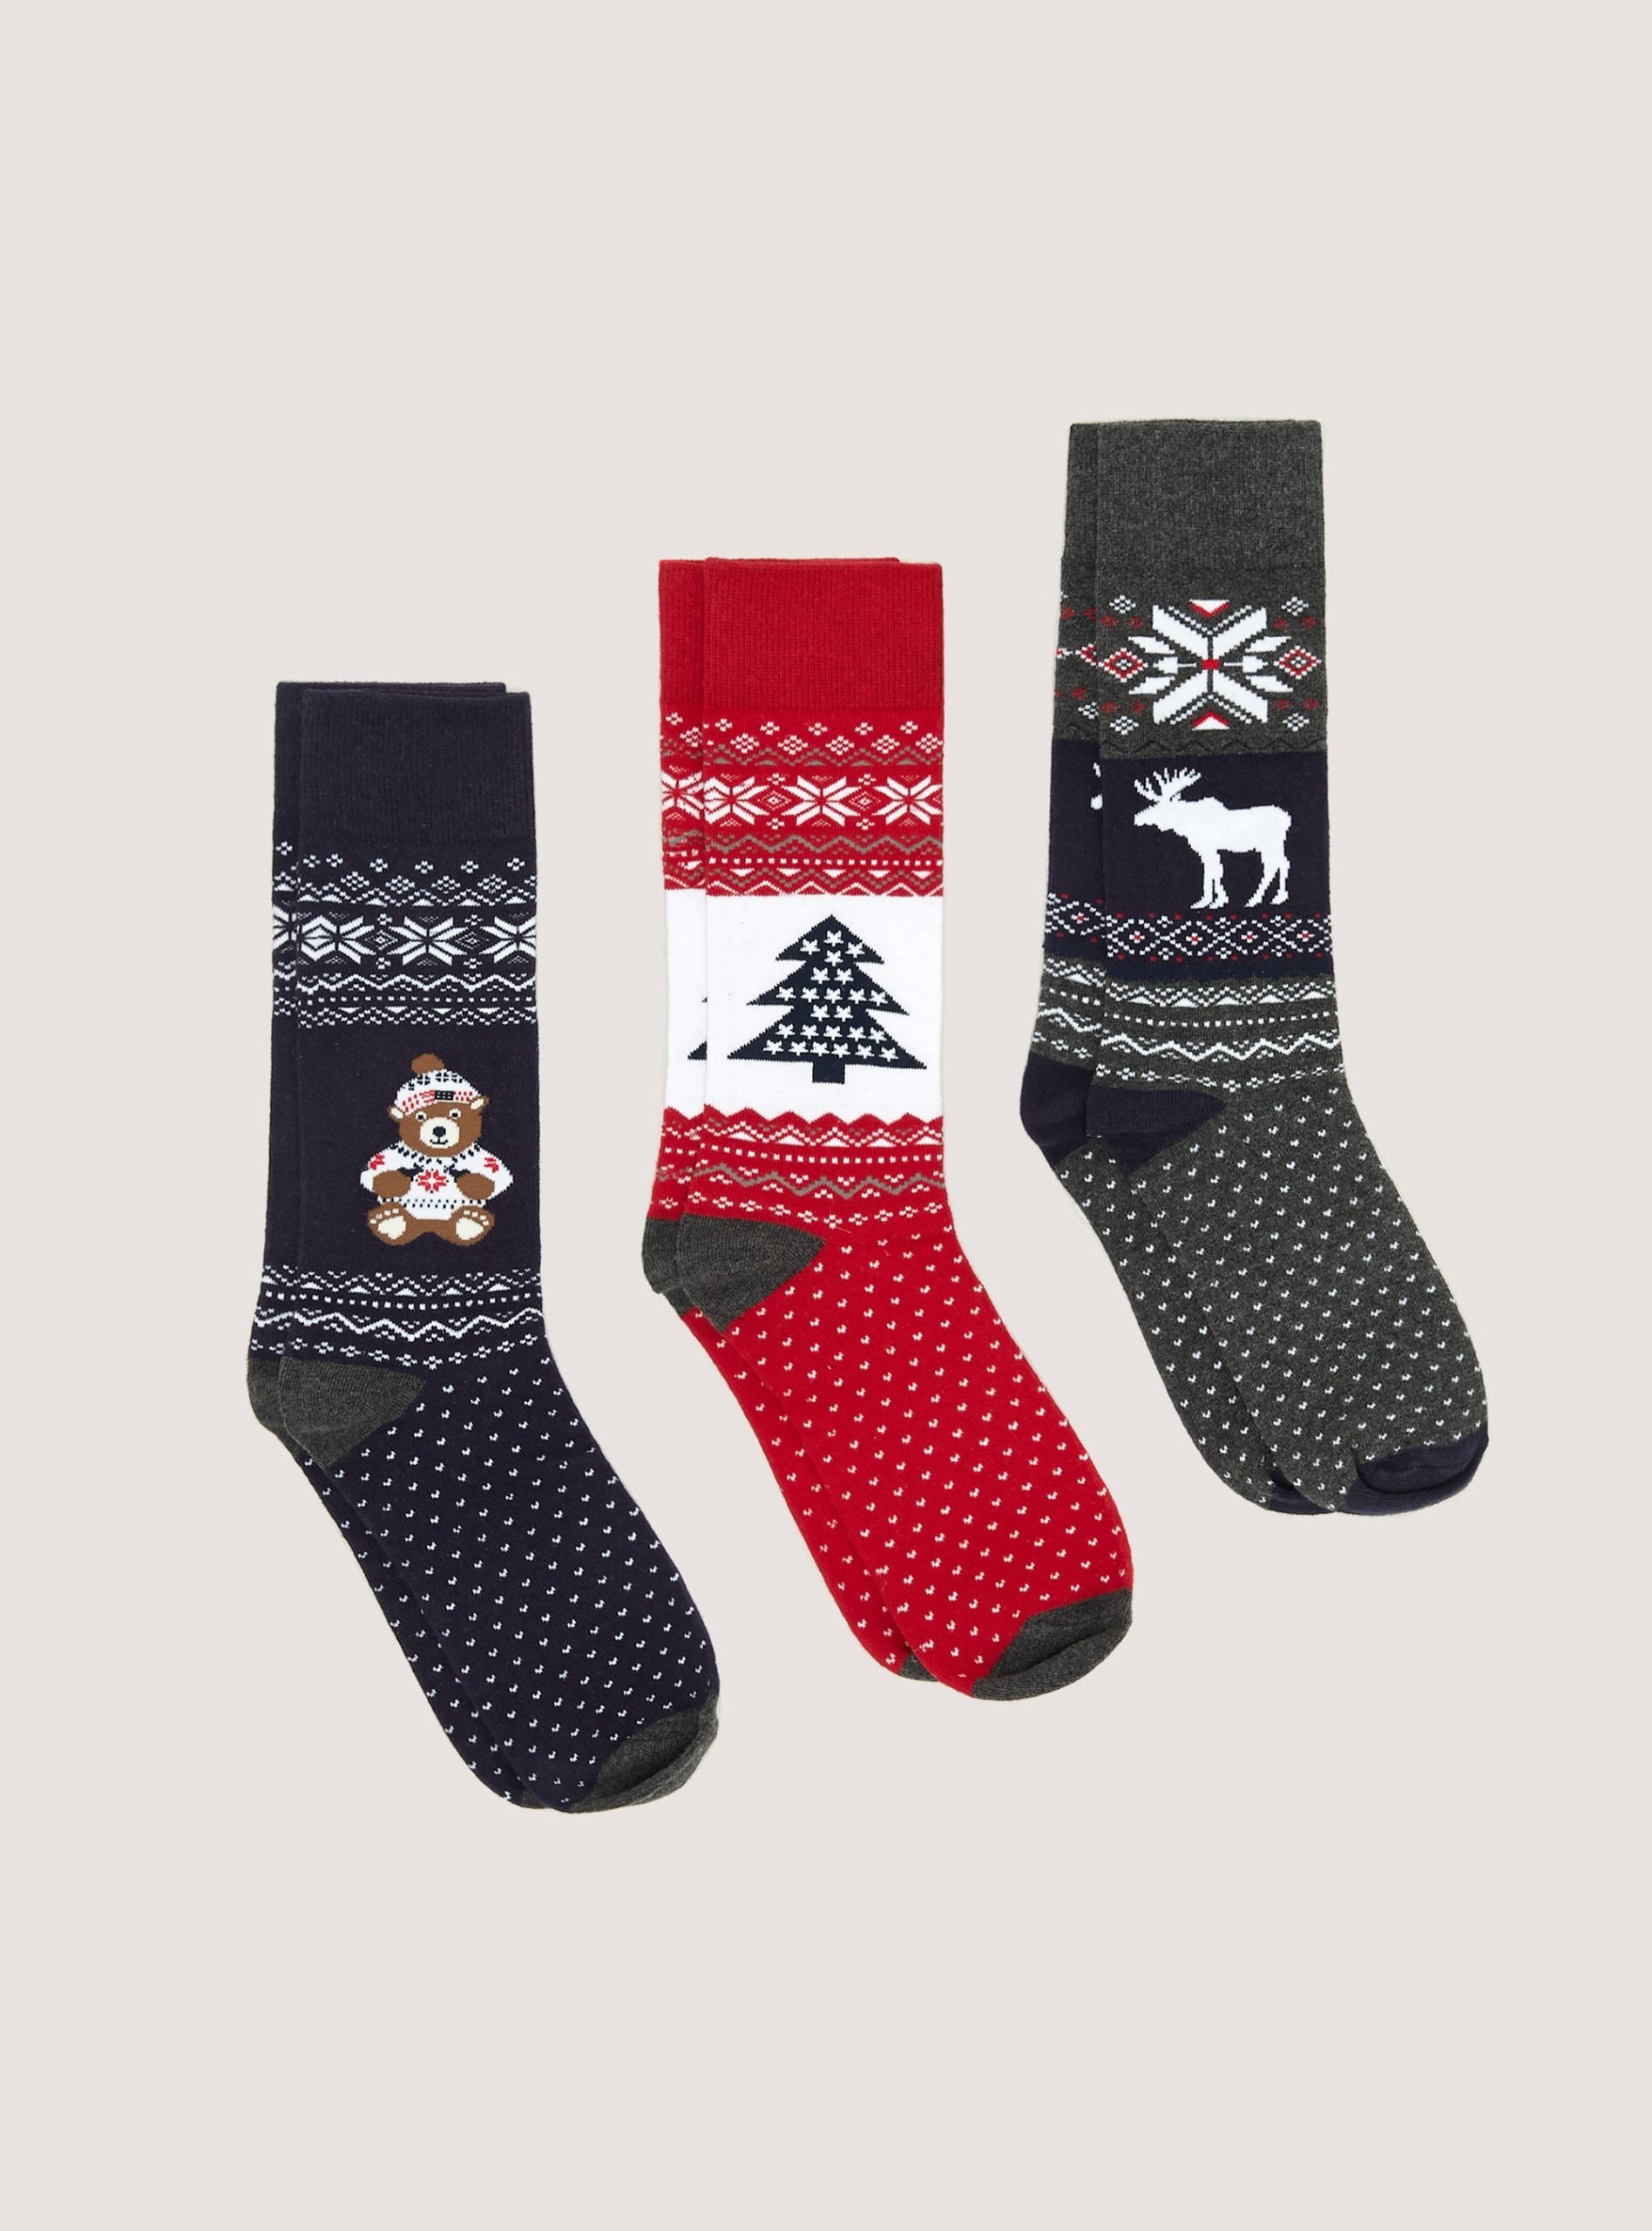 Männer Alcott Socken Xmas Preisangebot Set Of 3 Christmas Socks – 1